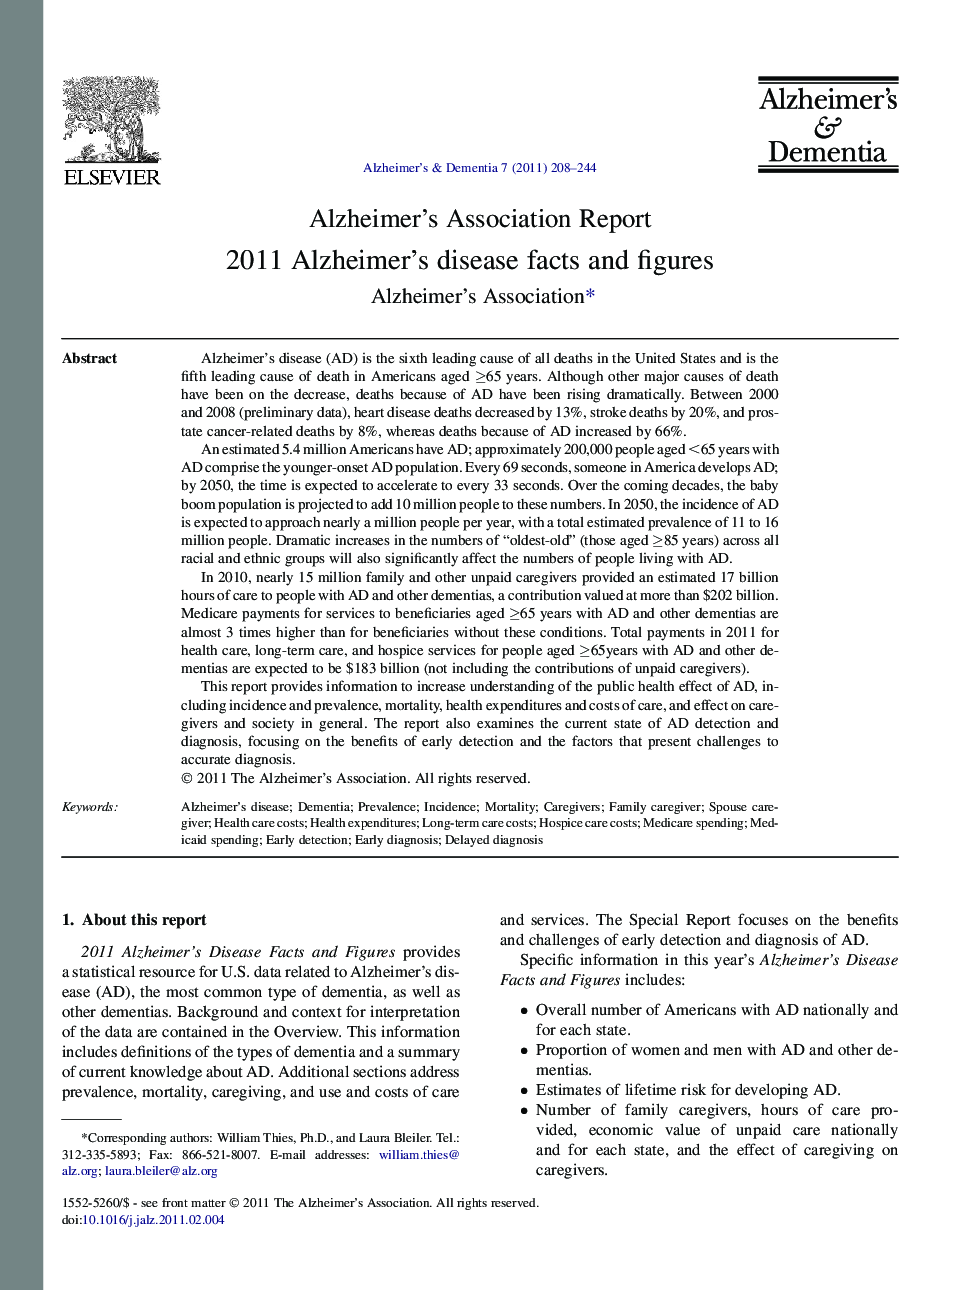 Alzheimer's Association Report2011 Alzheimer's disease facts and figures